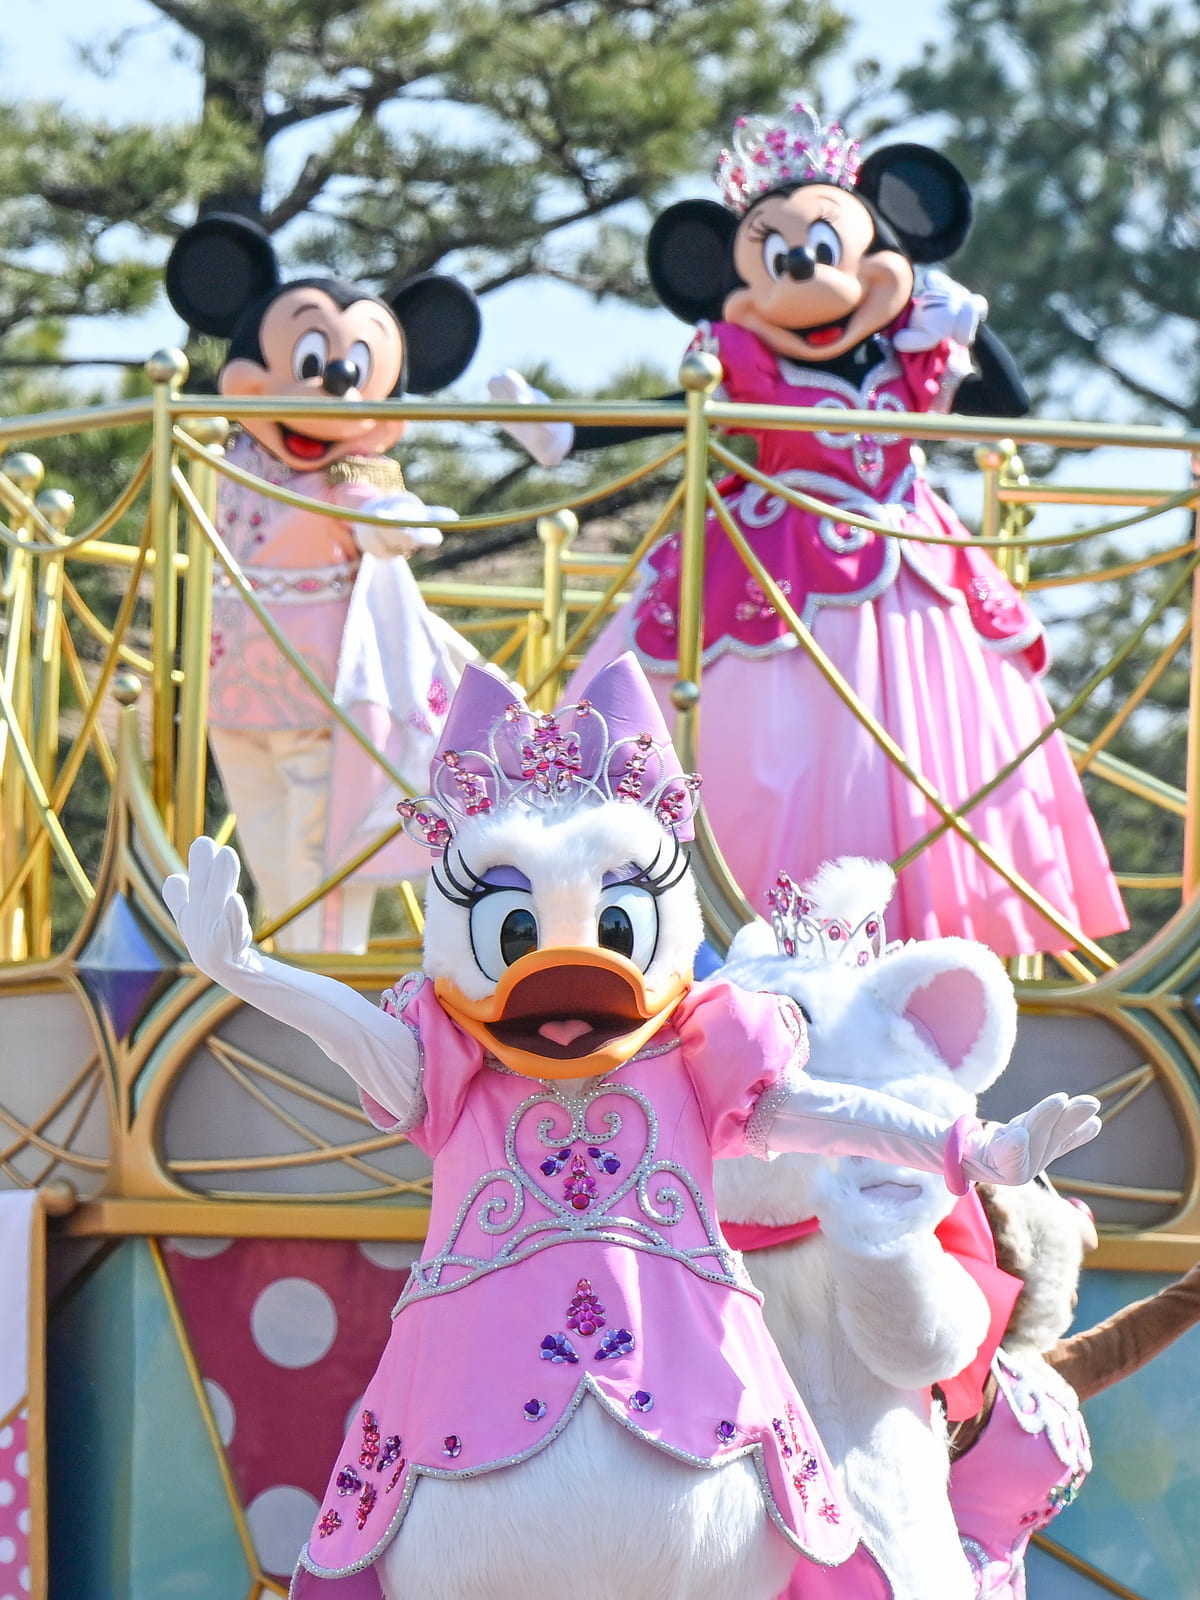 ディズニー・プリンセス・デイズのコスチュームで登場！東京ディズニーランド「ミニー＆フレンズのグリーティングパレード：トータリー・ミニー マウス」テーマ「夢見るミニーマウス」